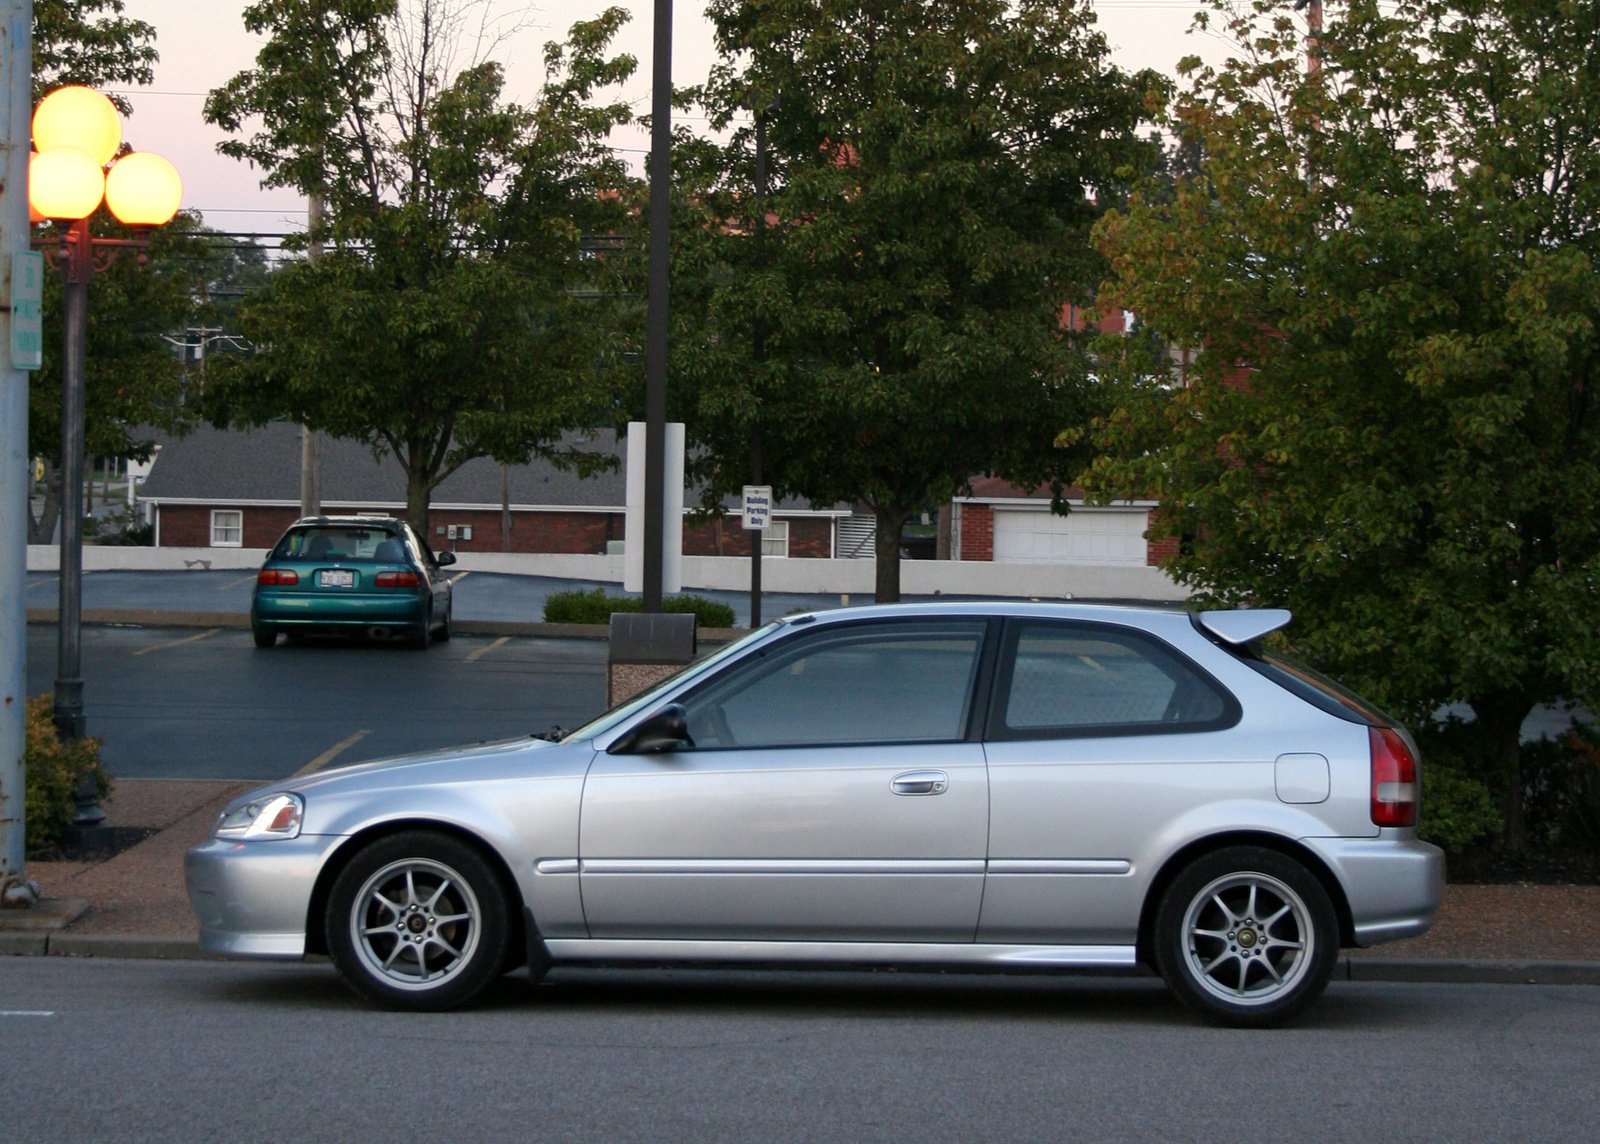 Honda civic 1999. Хонда Civic 1999. Honda Civic Hatchback 1999. Honda Celica 1999.